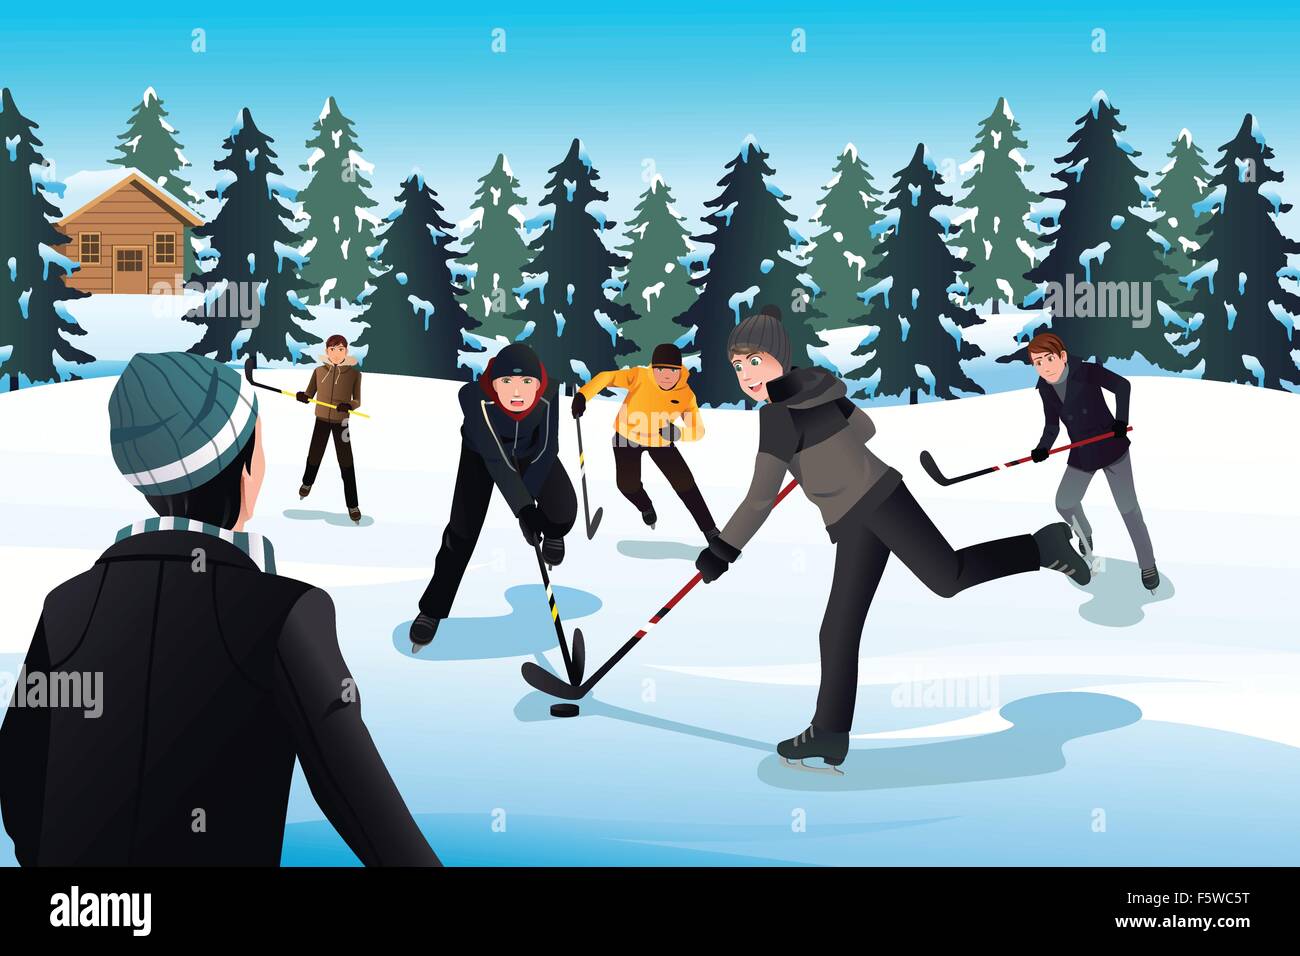 Eine Vektor-Illustration der Männer Eishockey zu spielen Stock Vektor